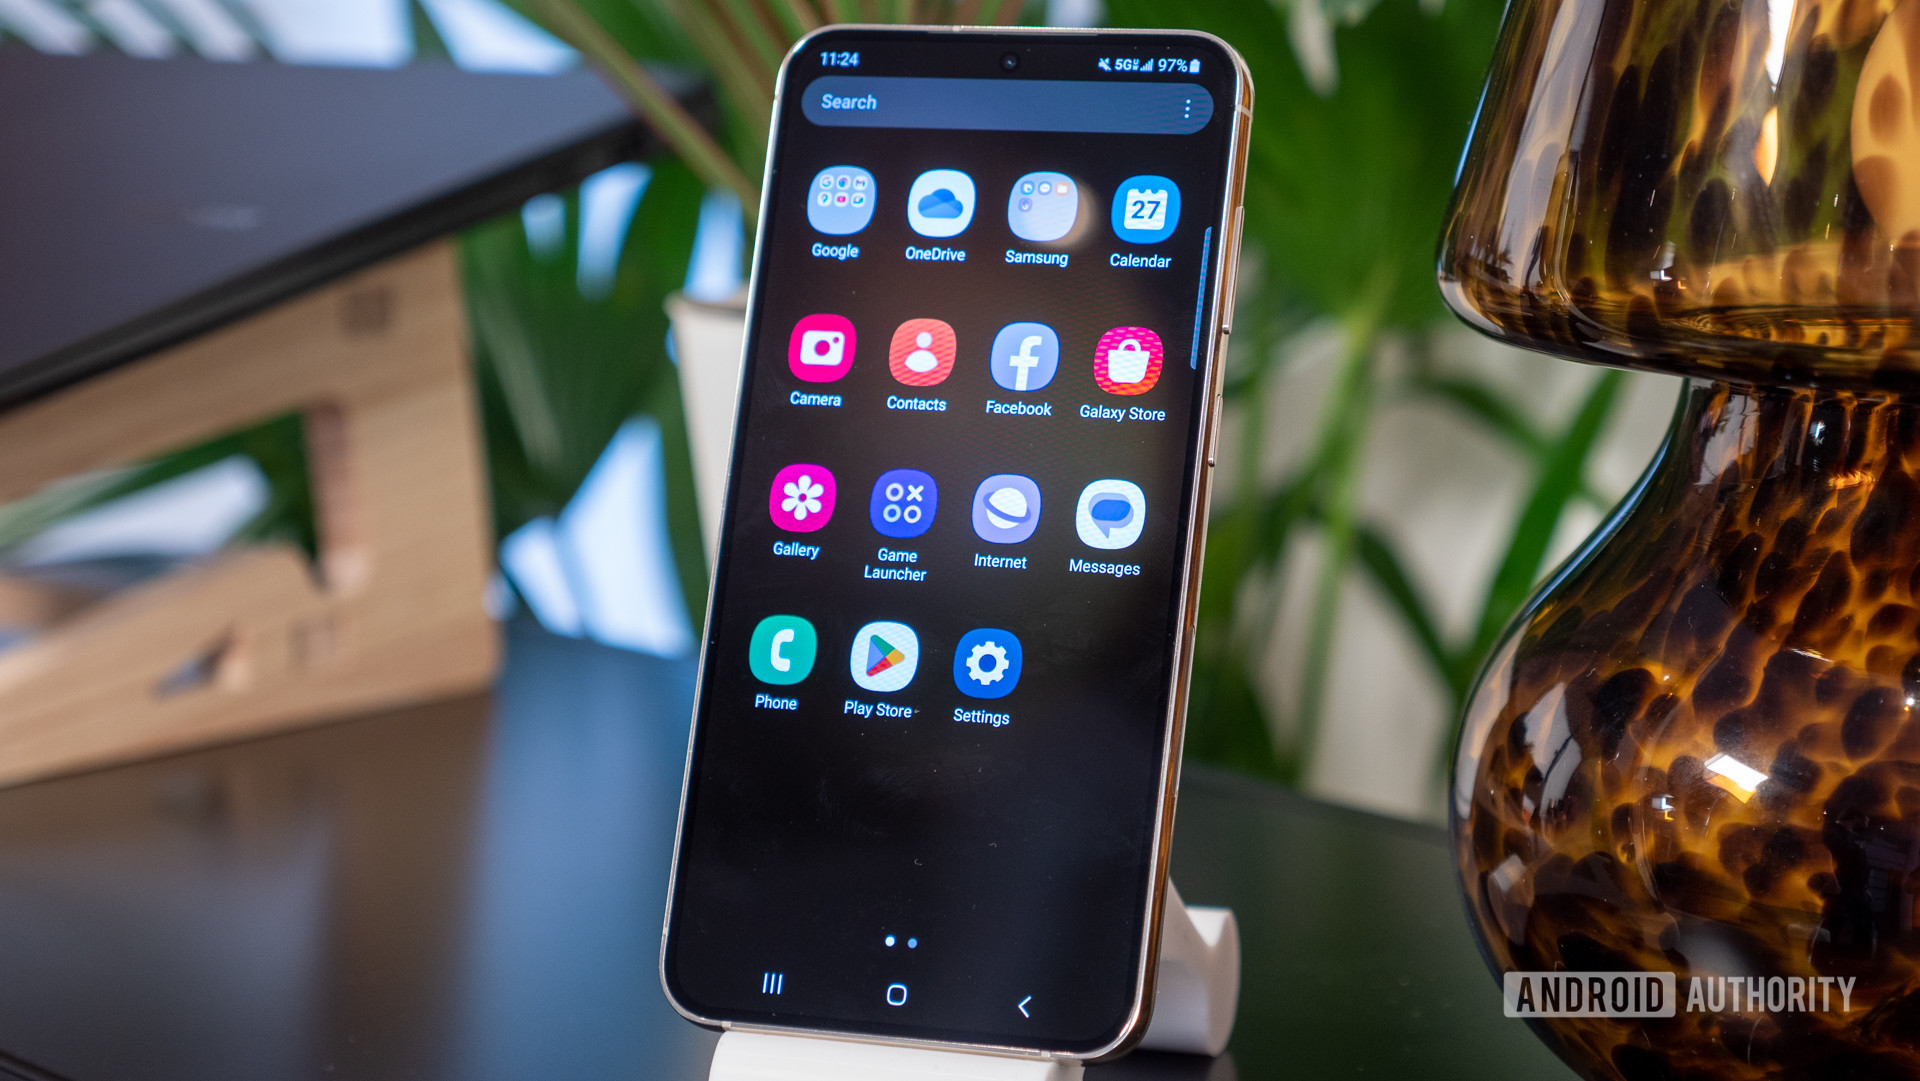 Samsung finalmente puede darle a su cajón de aplicaciones la característica que todos pedían